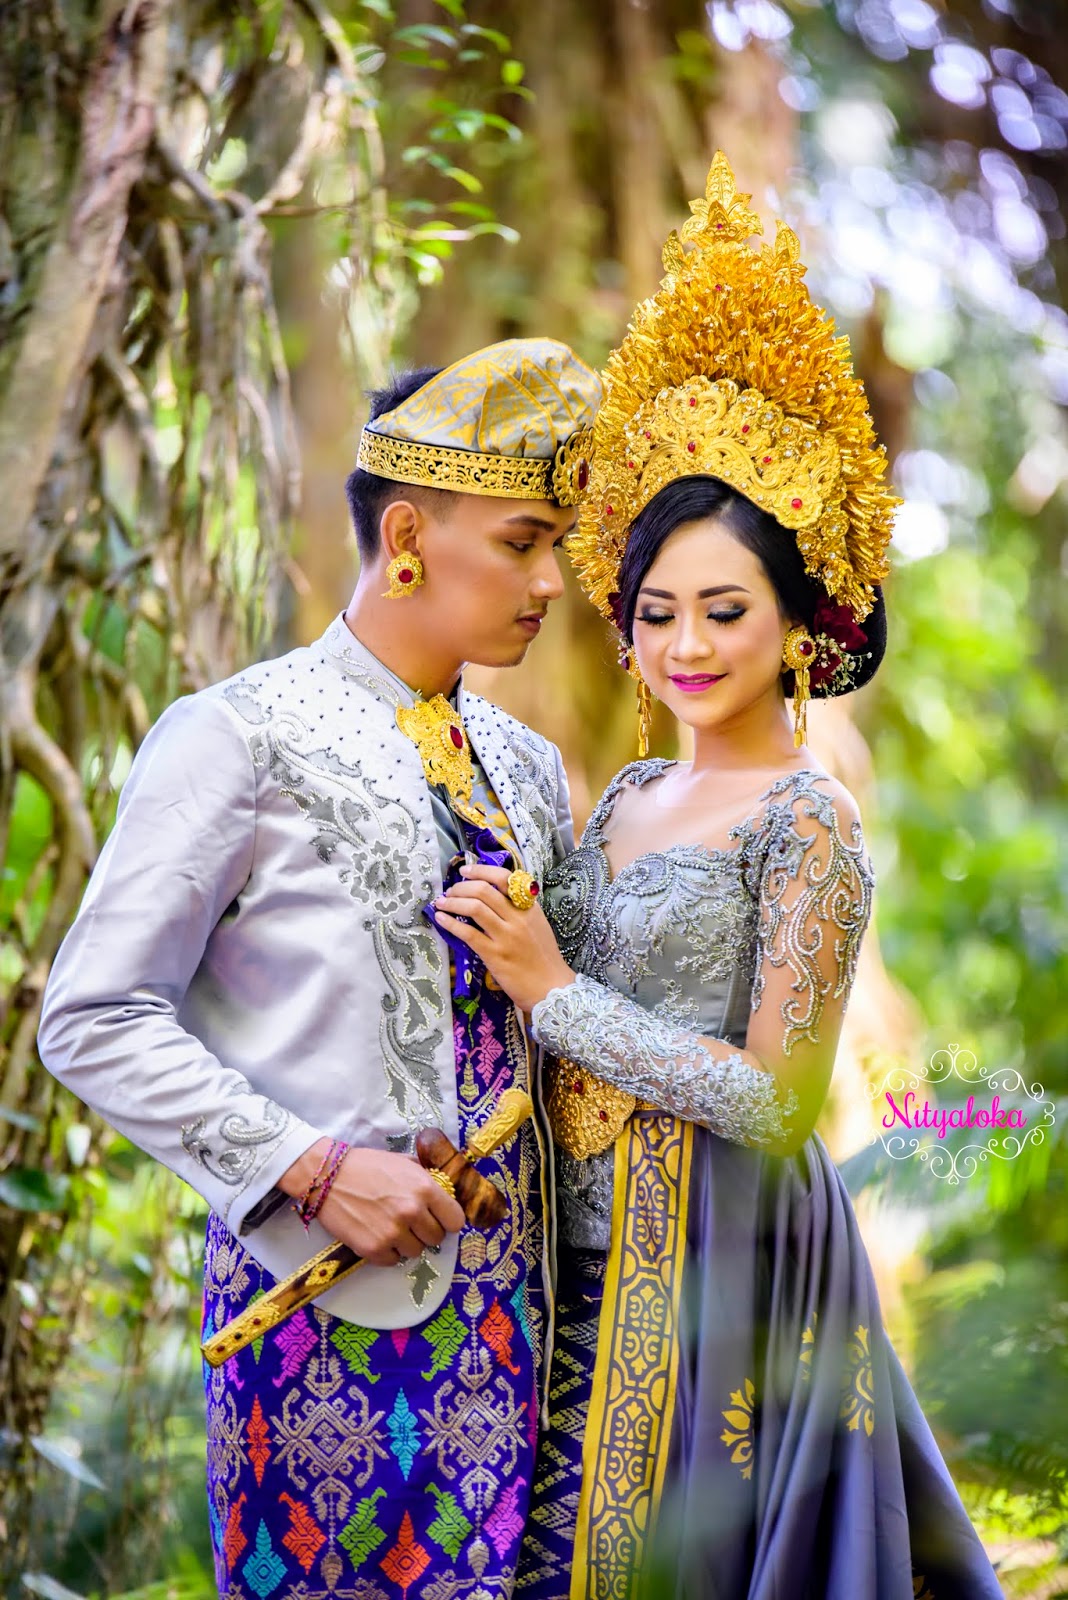 Foto Prewedding Murah Di Bali Lengkap Dengan Rias Make Up Gaun